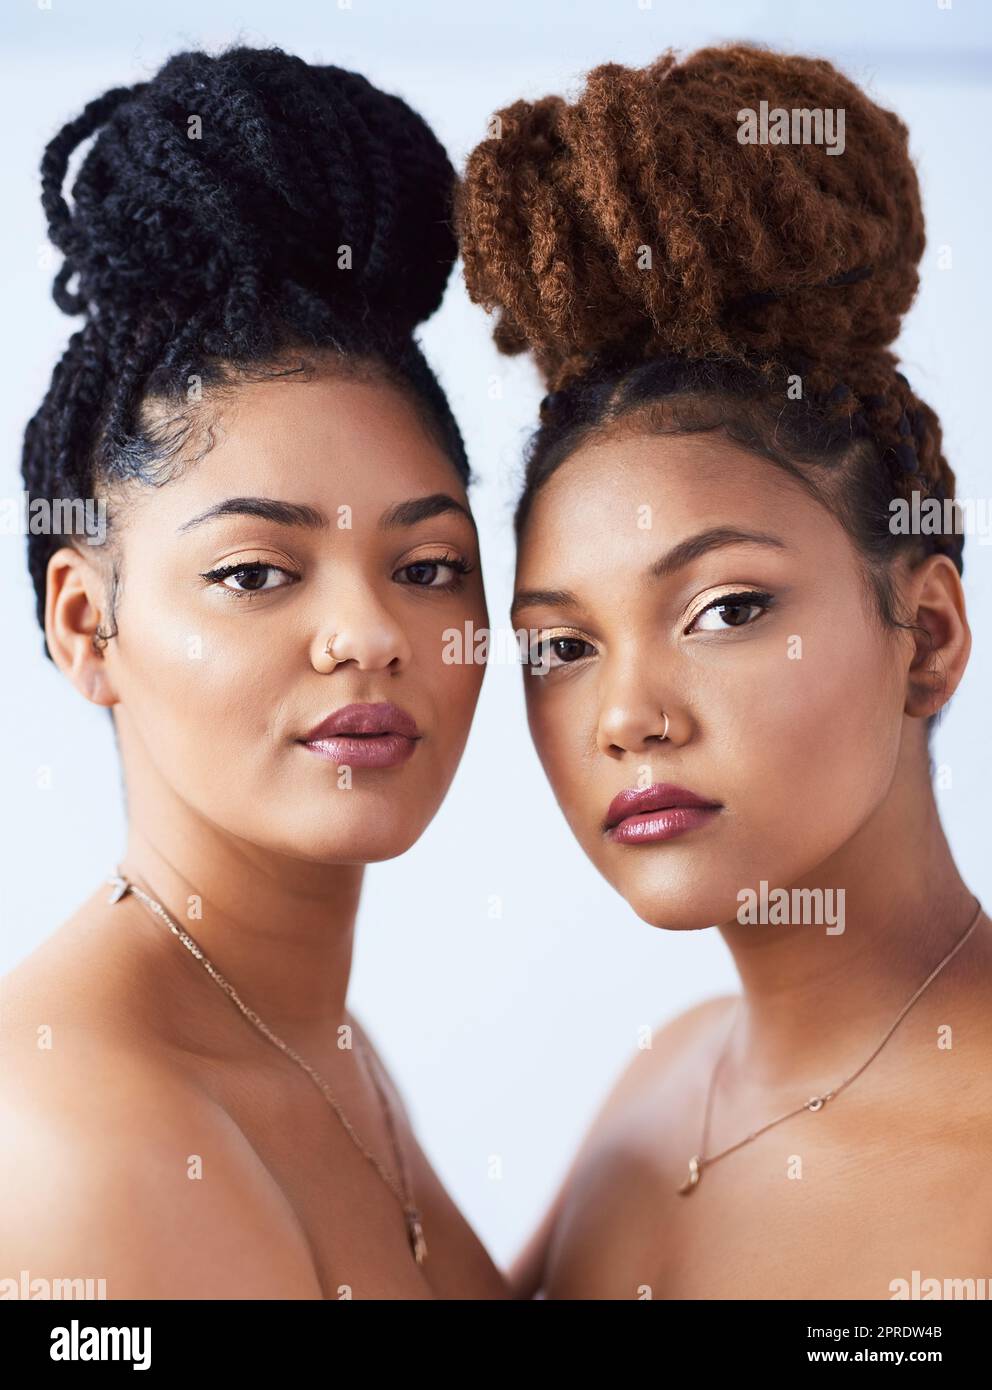 Capelli indietro e guardare meraviglioso. Studio di due belle giovani donne in posa su uno sfondo grigio. Foto Stock